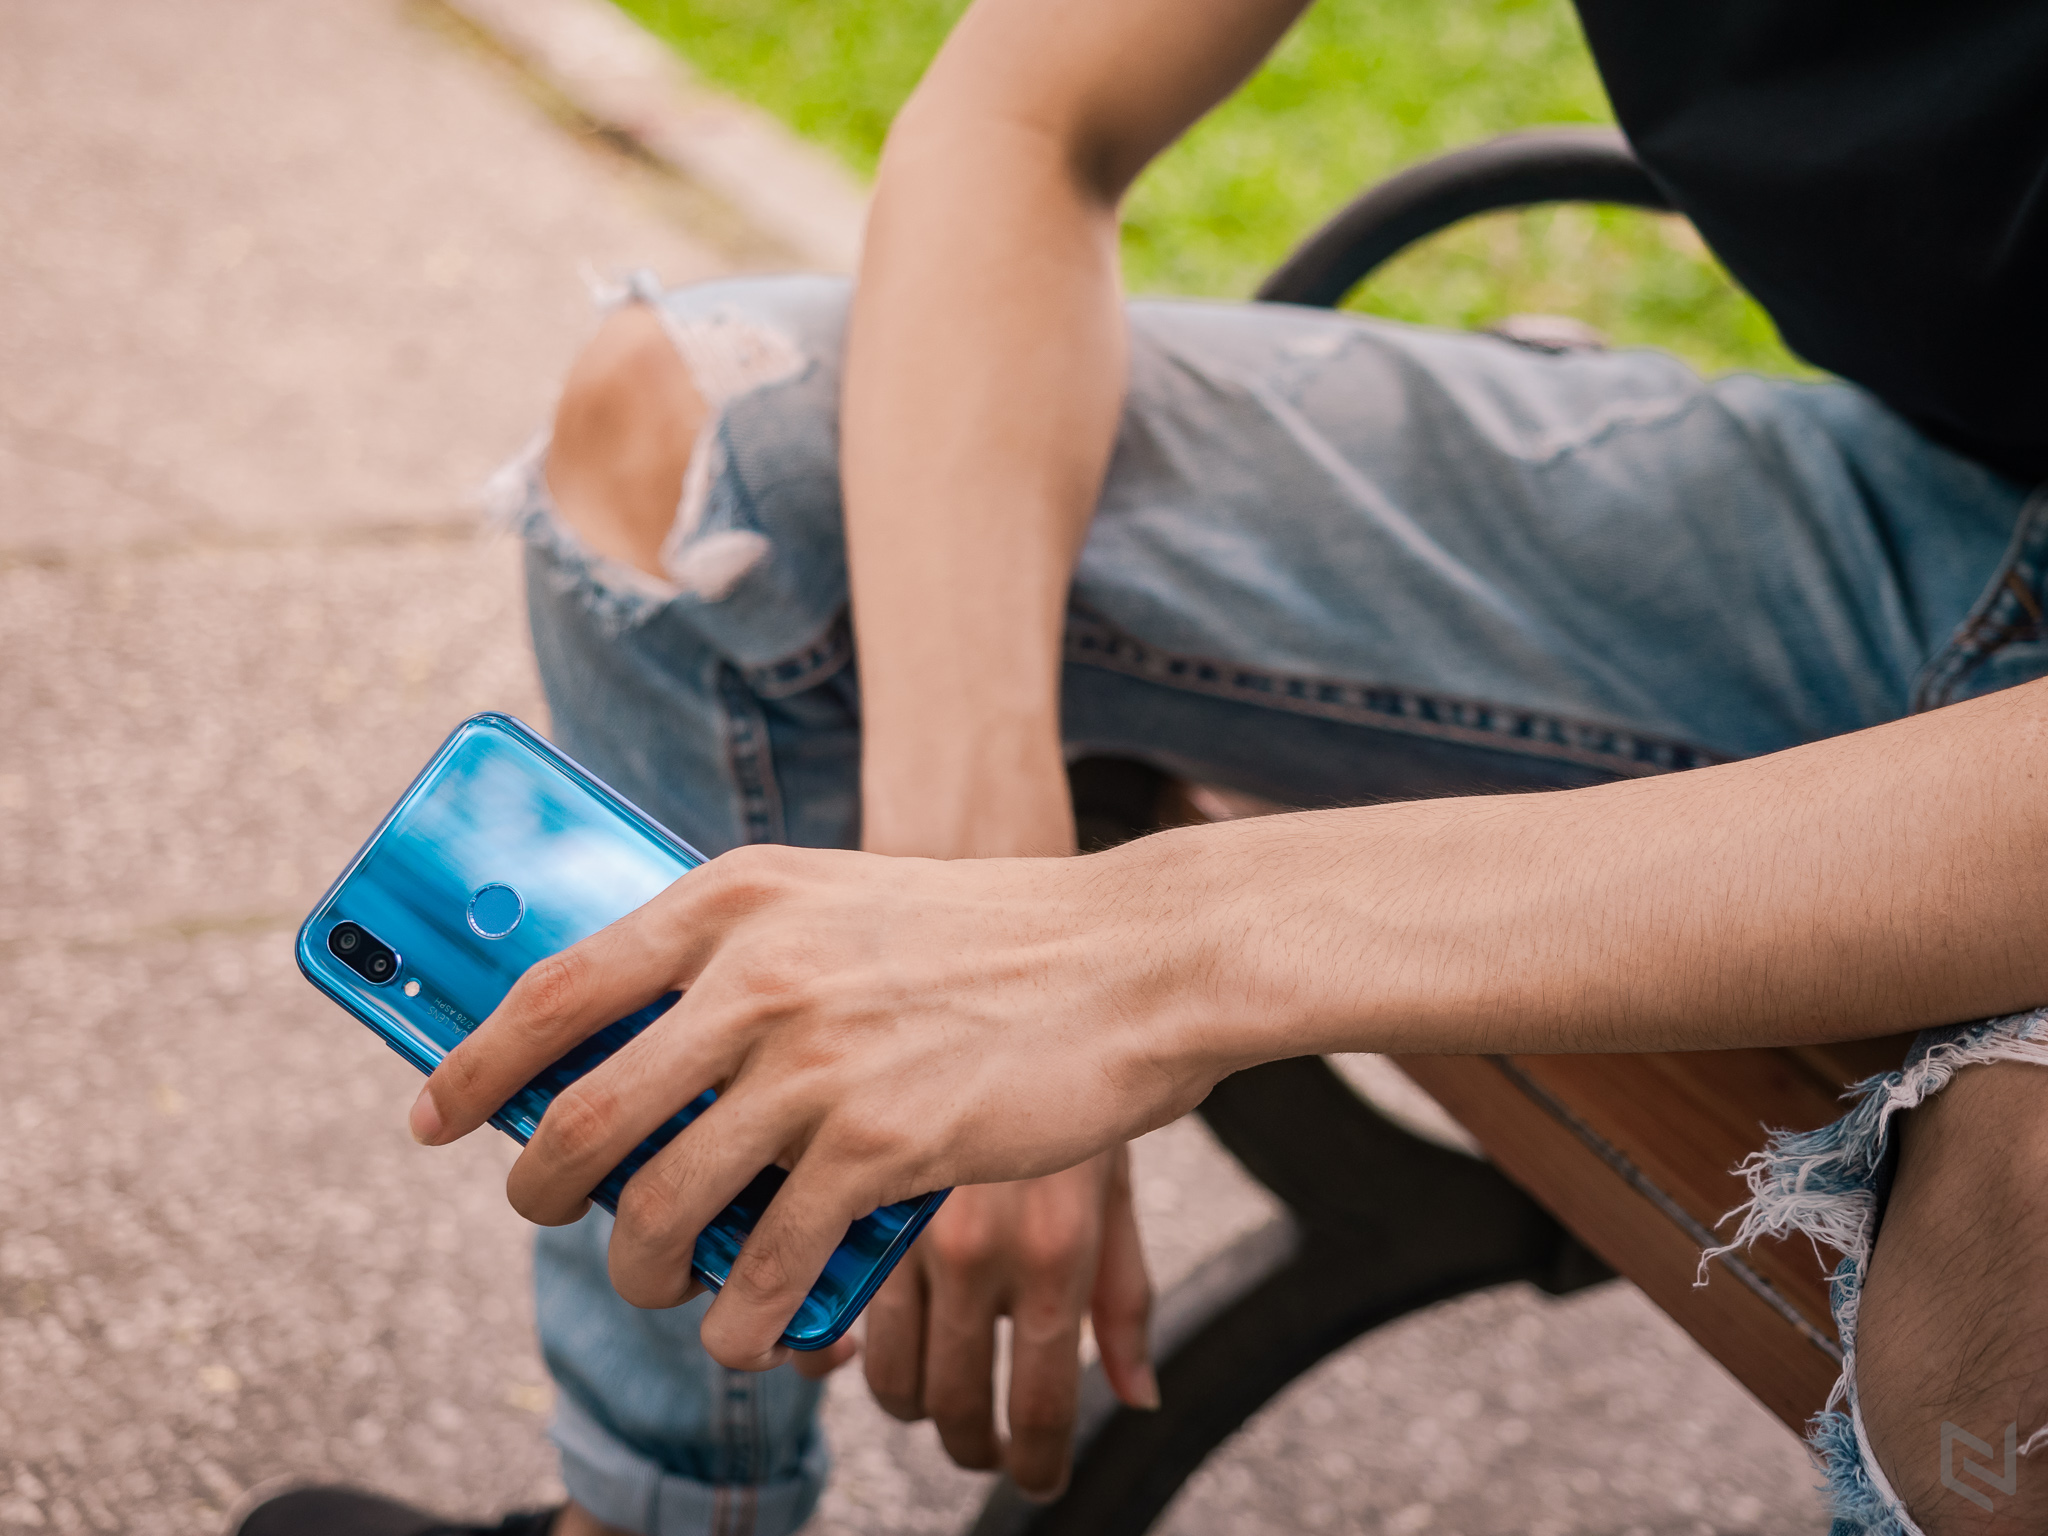 Đánh giá Huawei Nova 3e, chiếc điện thoại dành cho người thích màu xanh yêu hoà bình